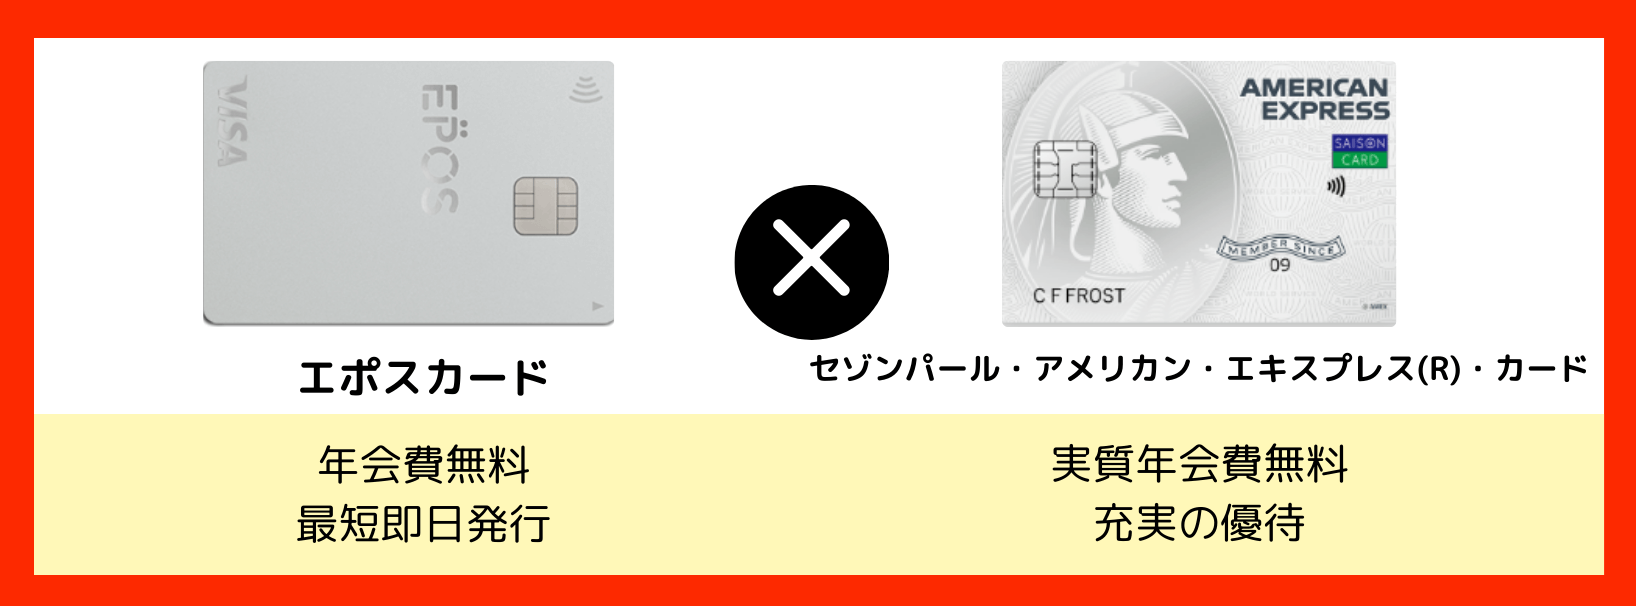 クレジットカード最強の2枚_エポスカード×セゾンパール